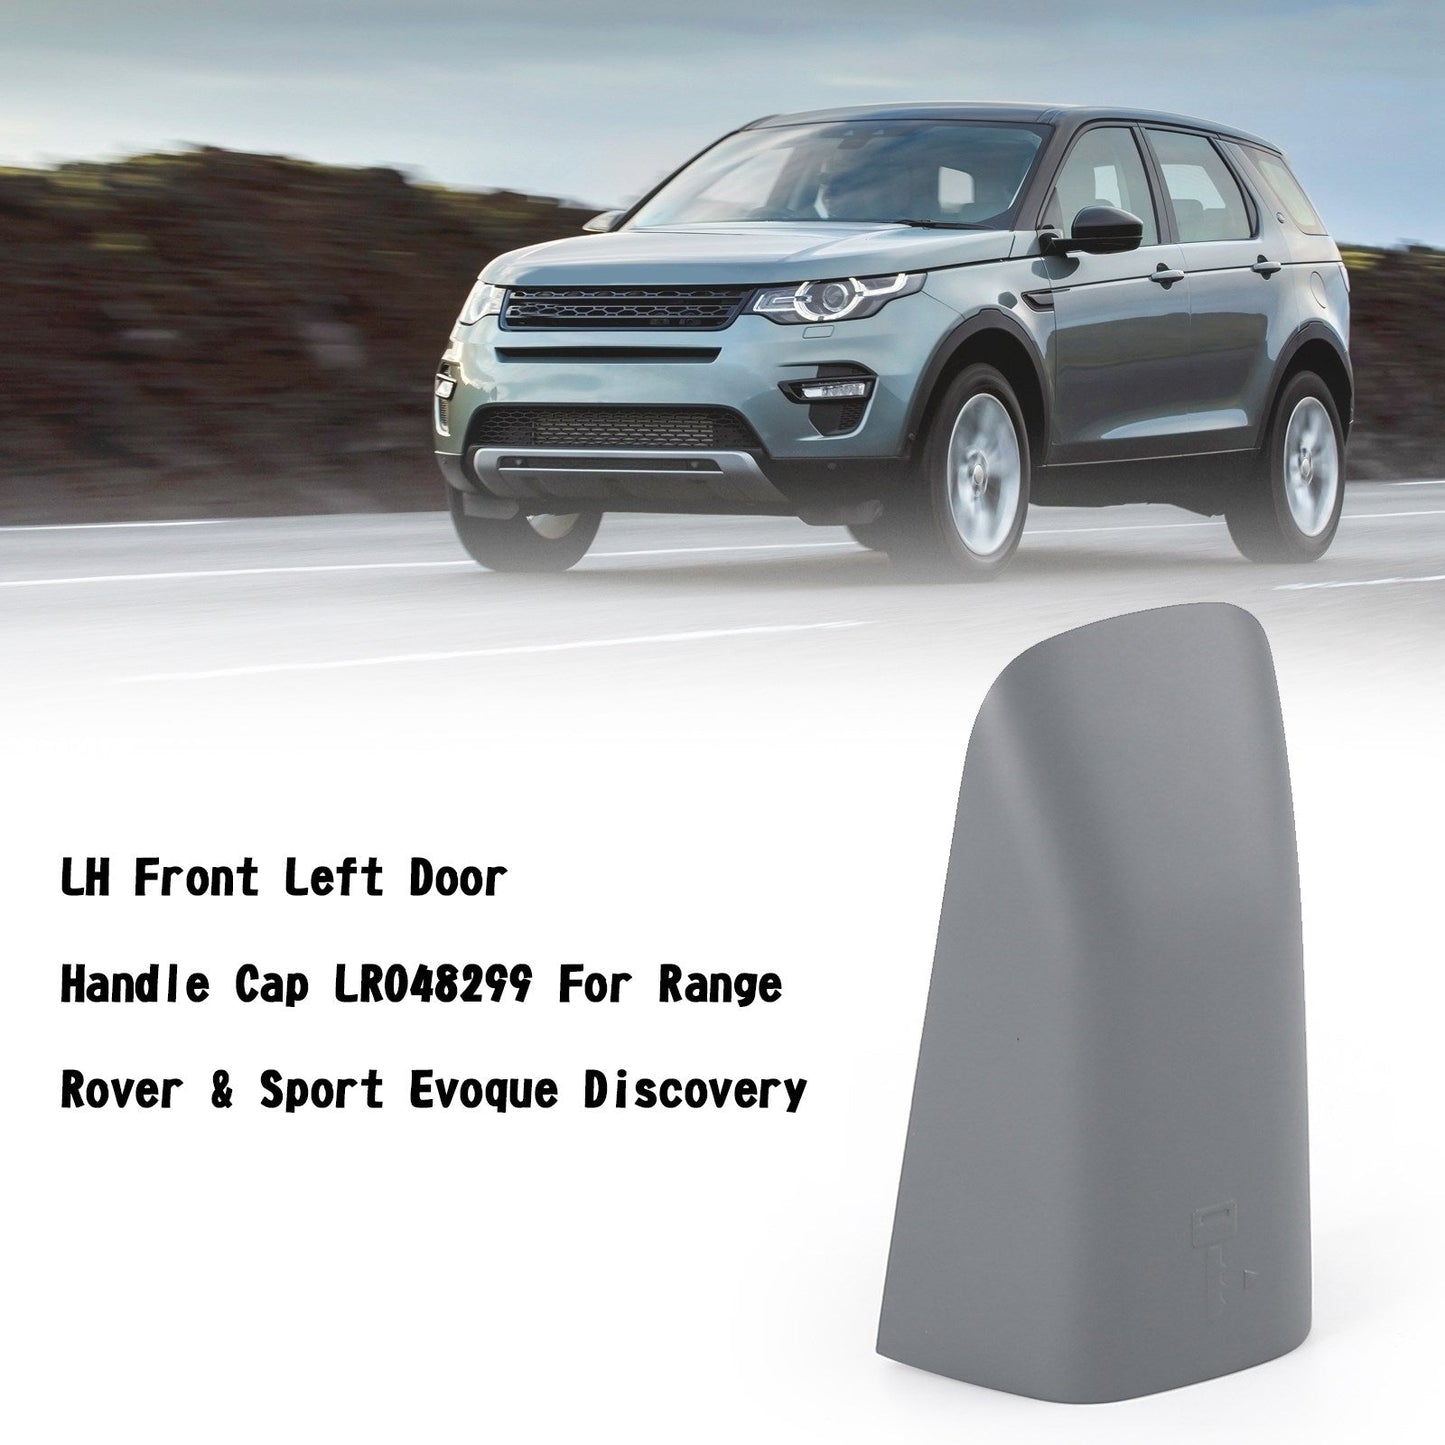 LH Front Left Door Handle Cap LR048299 For Range Rover & Sport Evoque Discovery